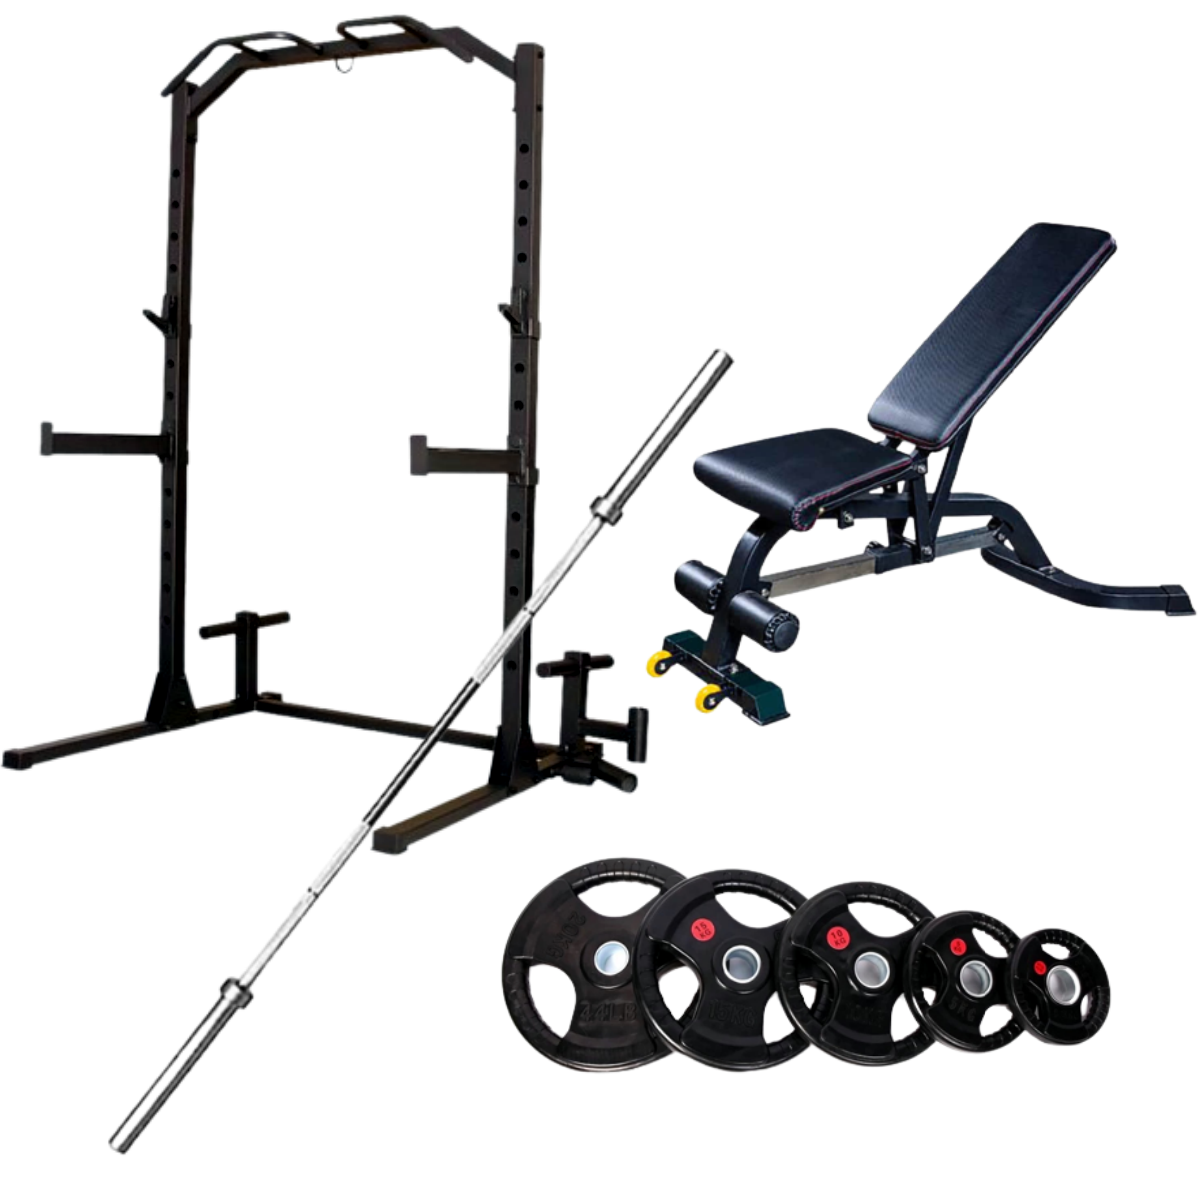 Squat Rack+Adjustable Bench+15kg Barbell+50kg Weights